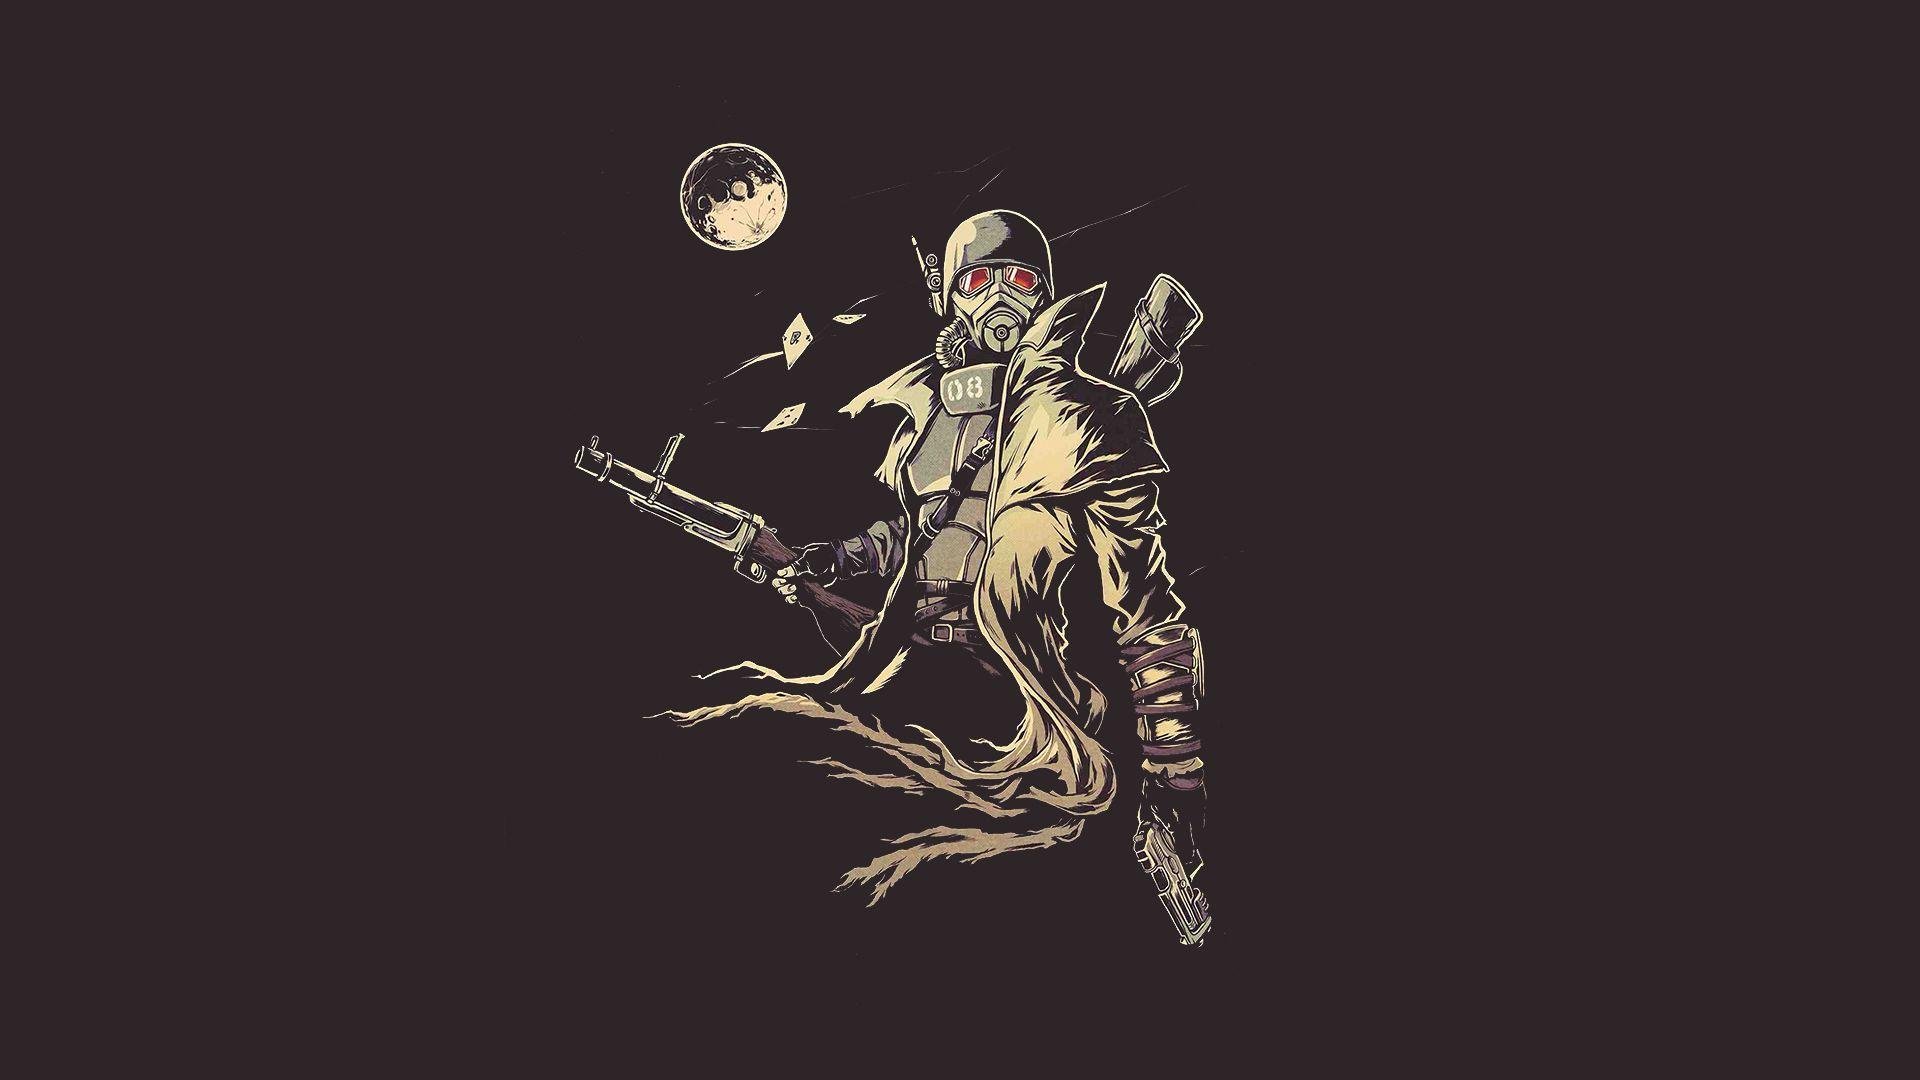 My current Ranger Wallpaper: Fallout